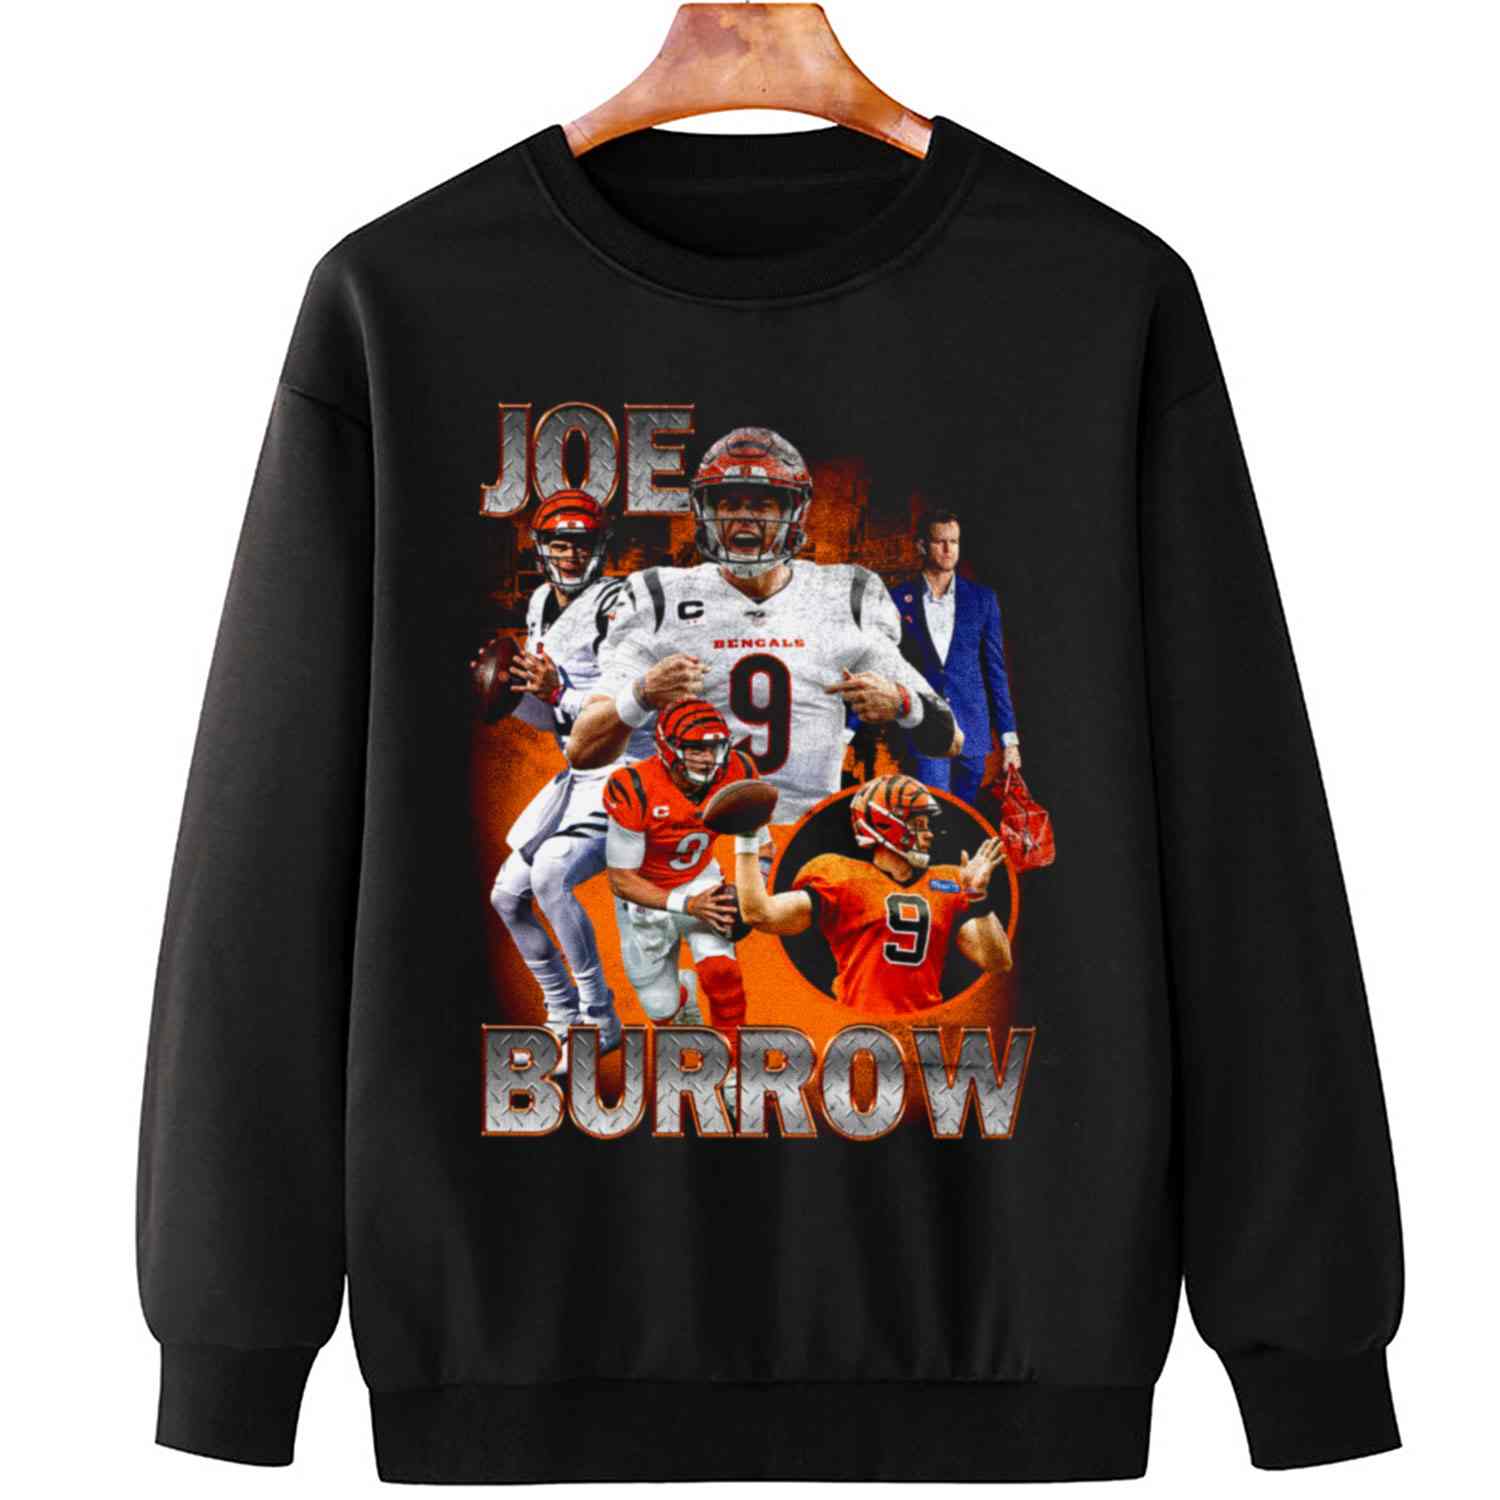 Joe Burrow Super Bowl Vintage Cincinnati Bengals T-Shirt